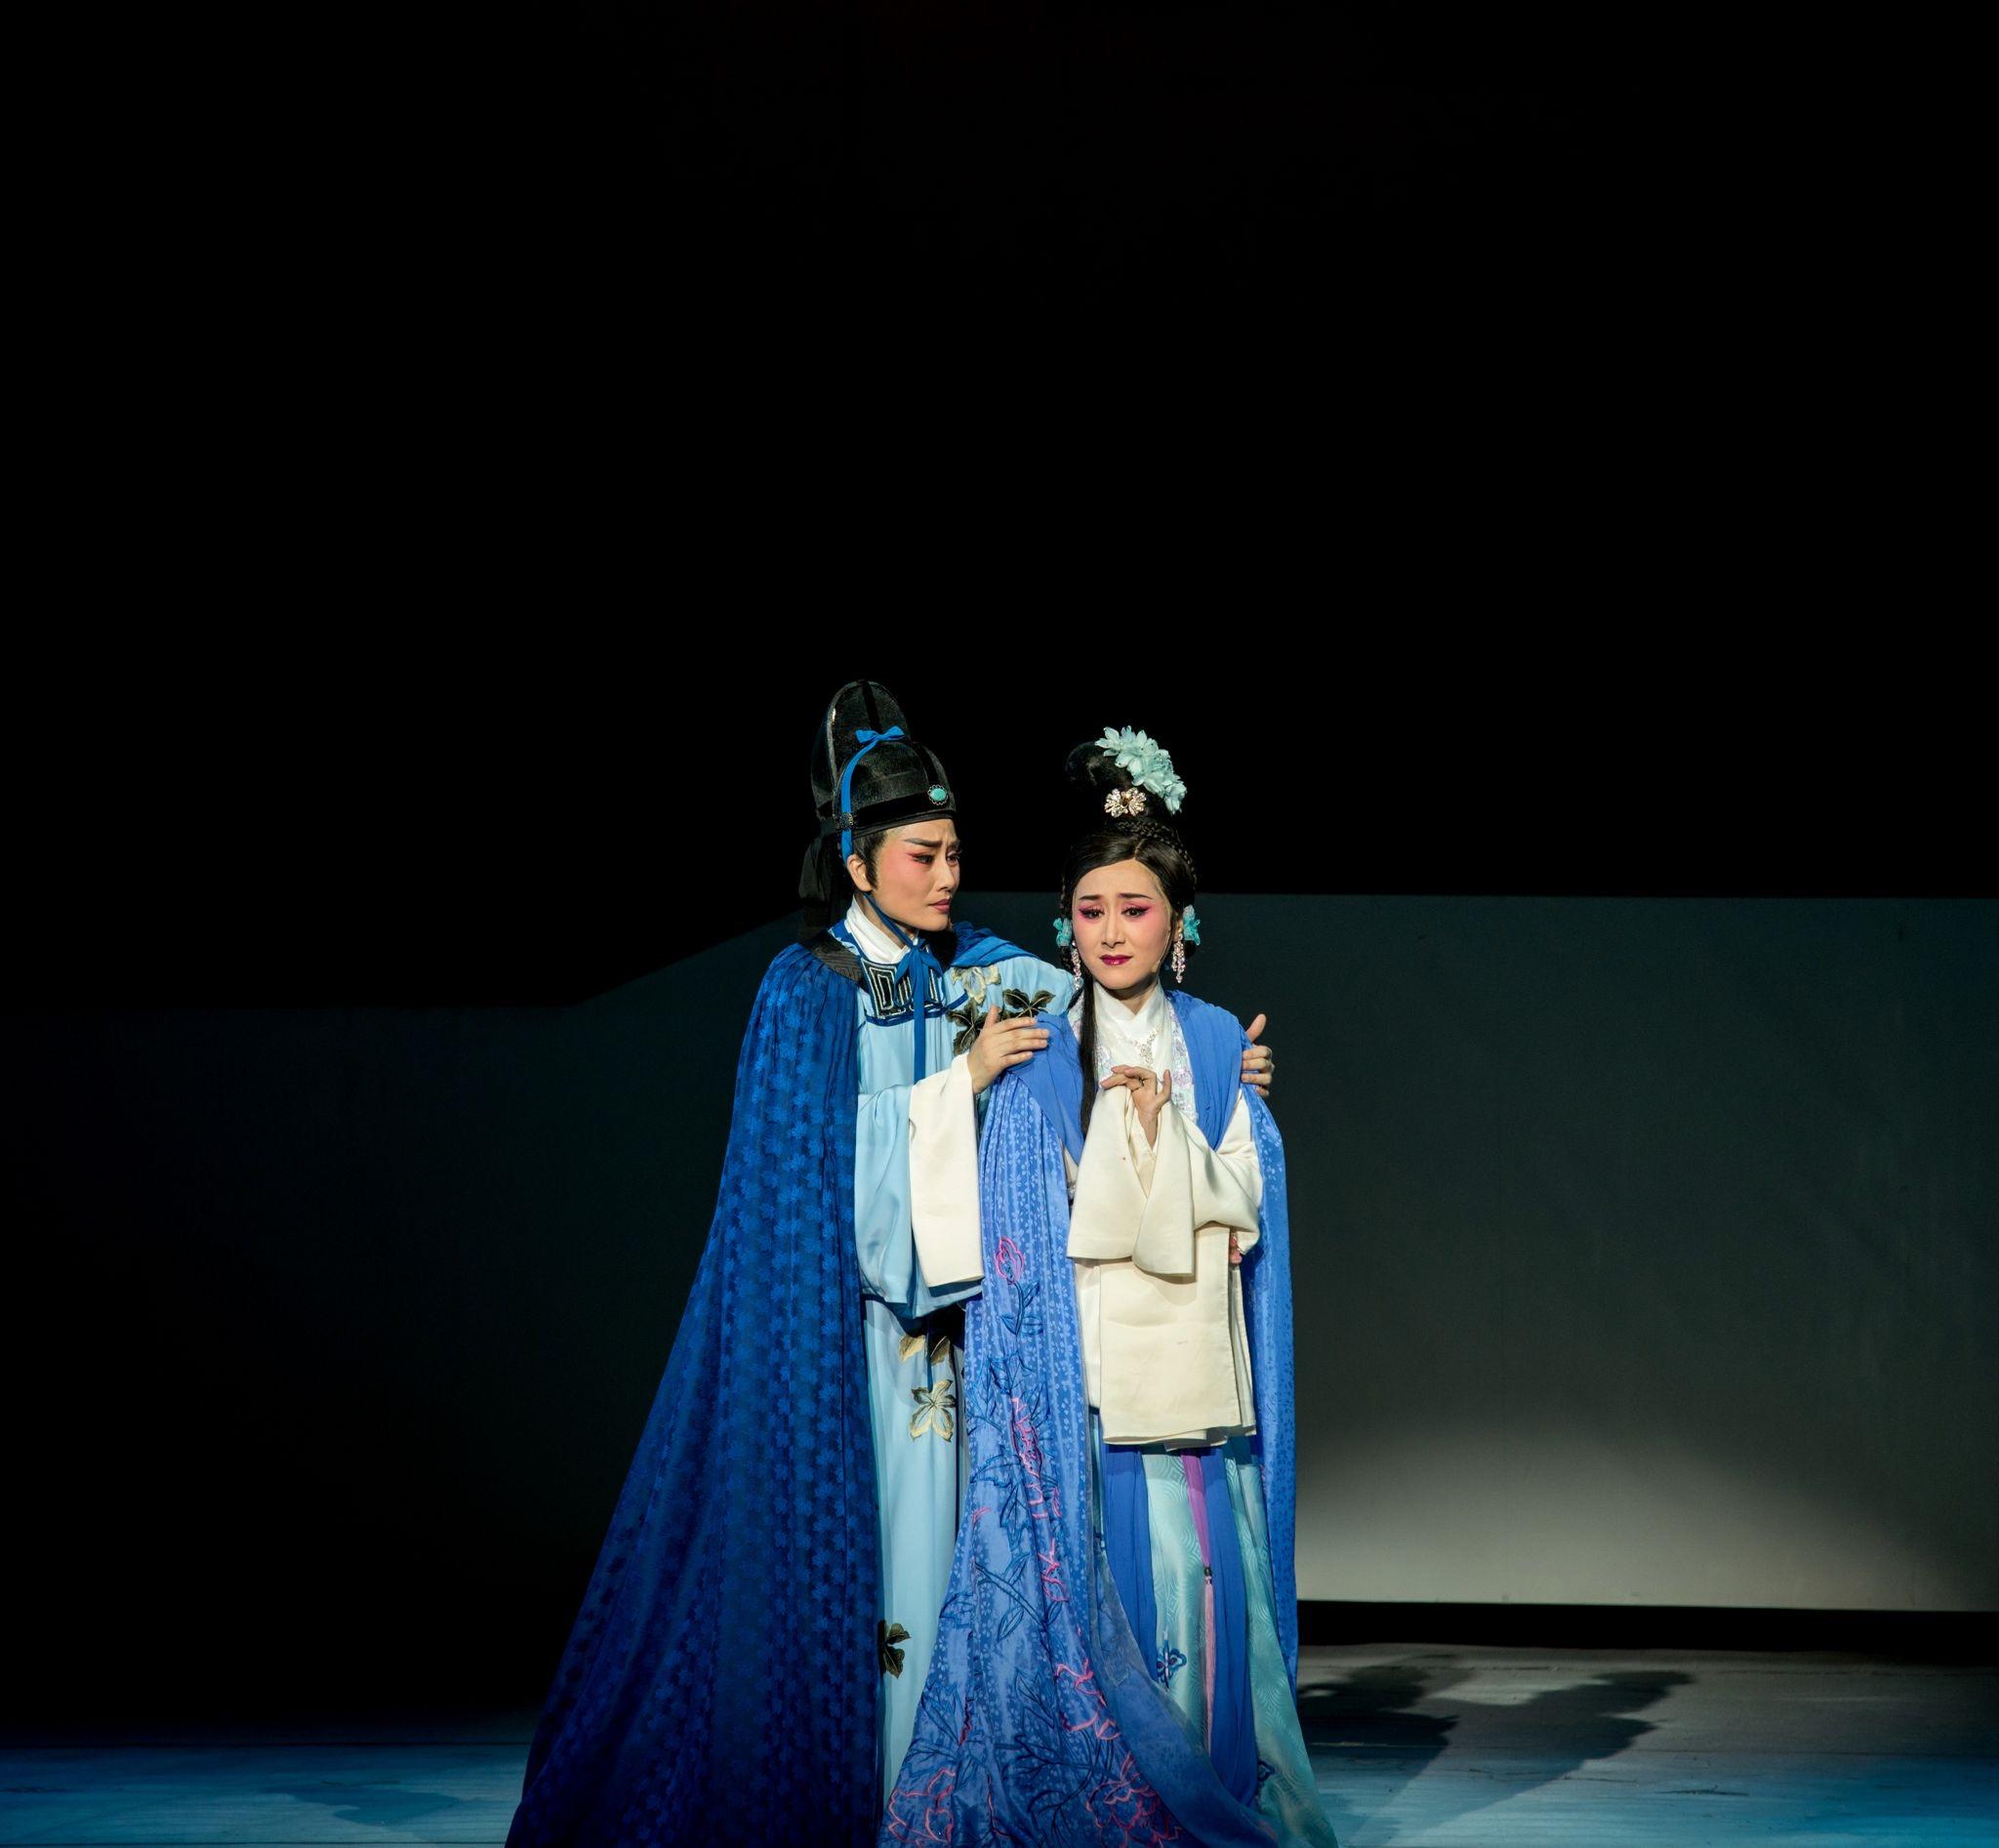 福建芳华越剧院于首届「中华文化节」上演三场越剧。图示《柳永》剧照。

